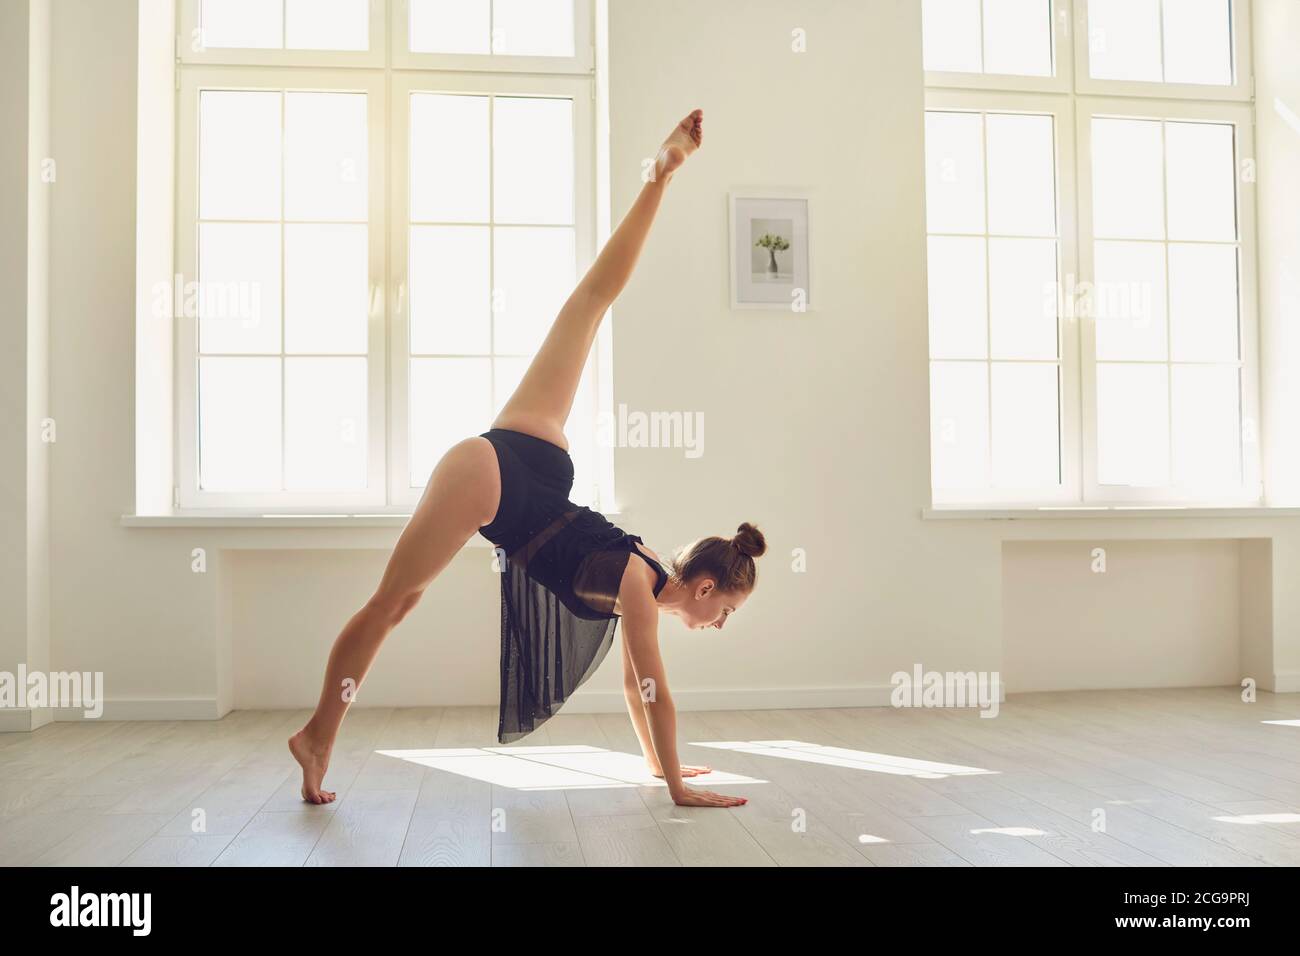 Buen aspecto delgado femenino gimnasta preparándose para hacer un puesto de mano en un estudio moderno Foto de stock